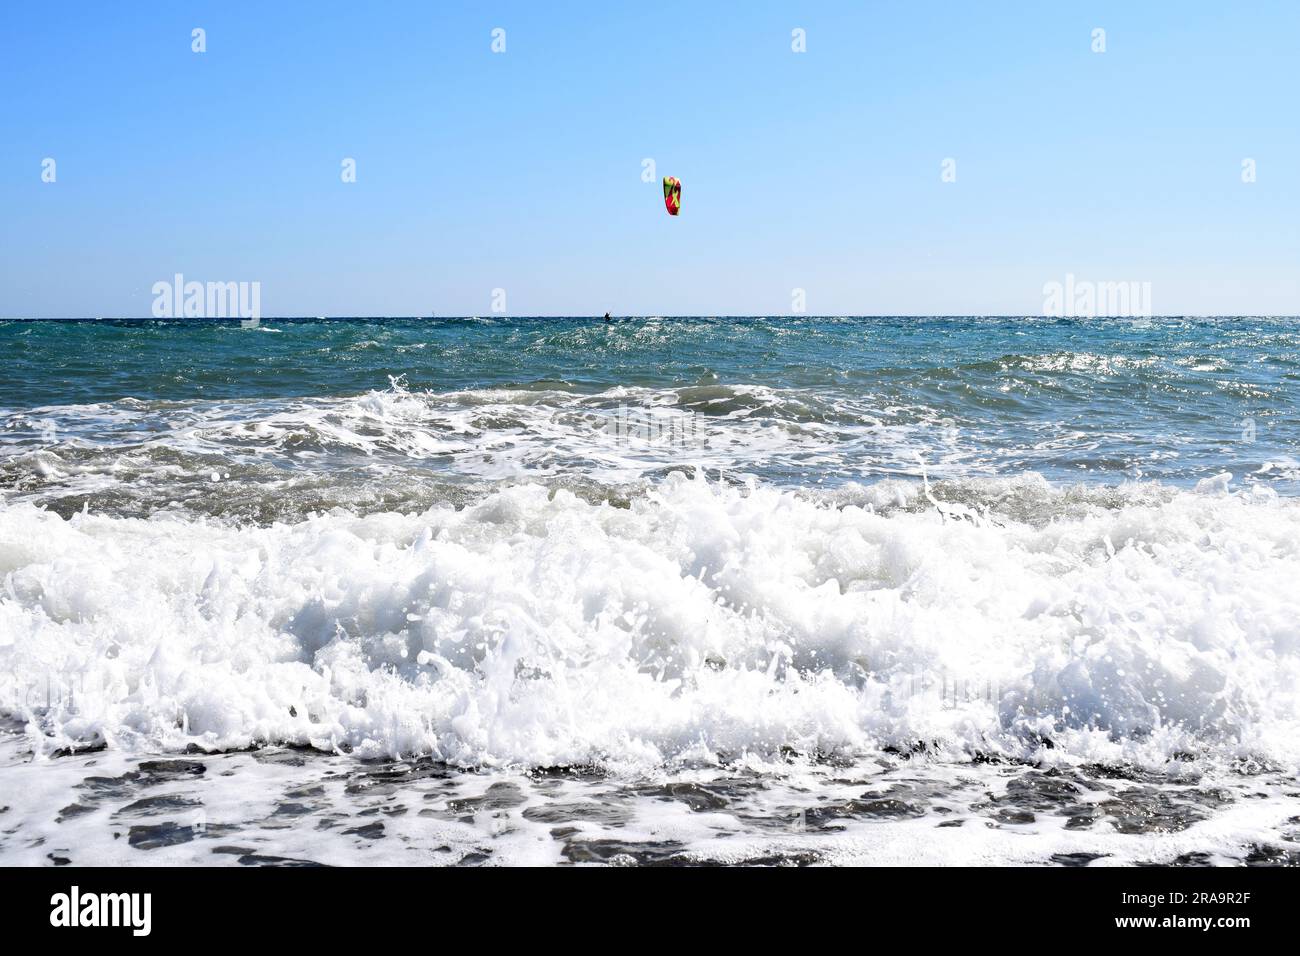 Onde bianche e schiumose con il kite surfer in lontananza in una giornata soleggiata e nuvolosa nel Mar Mediterraneo, Liguria, Italia Foto Stock